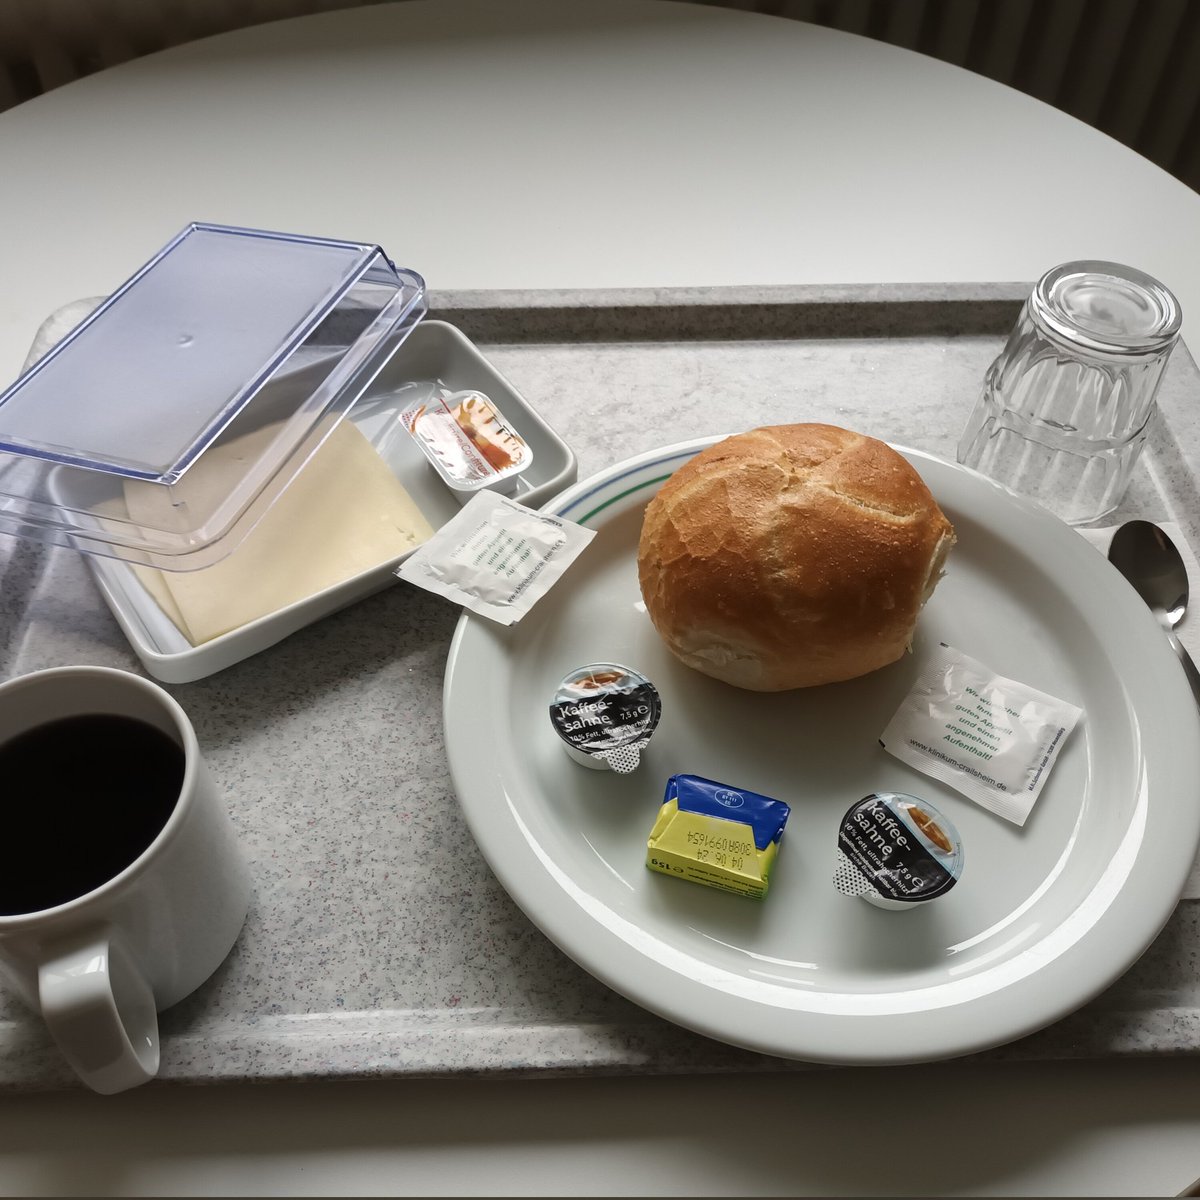 Wunderbar!😃 

Mein Frühstück im Krankenhaus 😊 
Das schafft keiner!🤣

Habt einen schönen Morgen mit einem ordentlichen Frühstück 😘